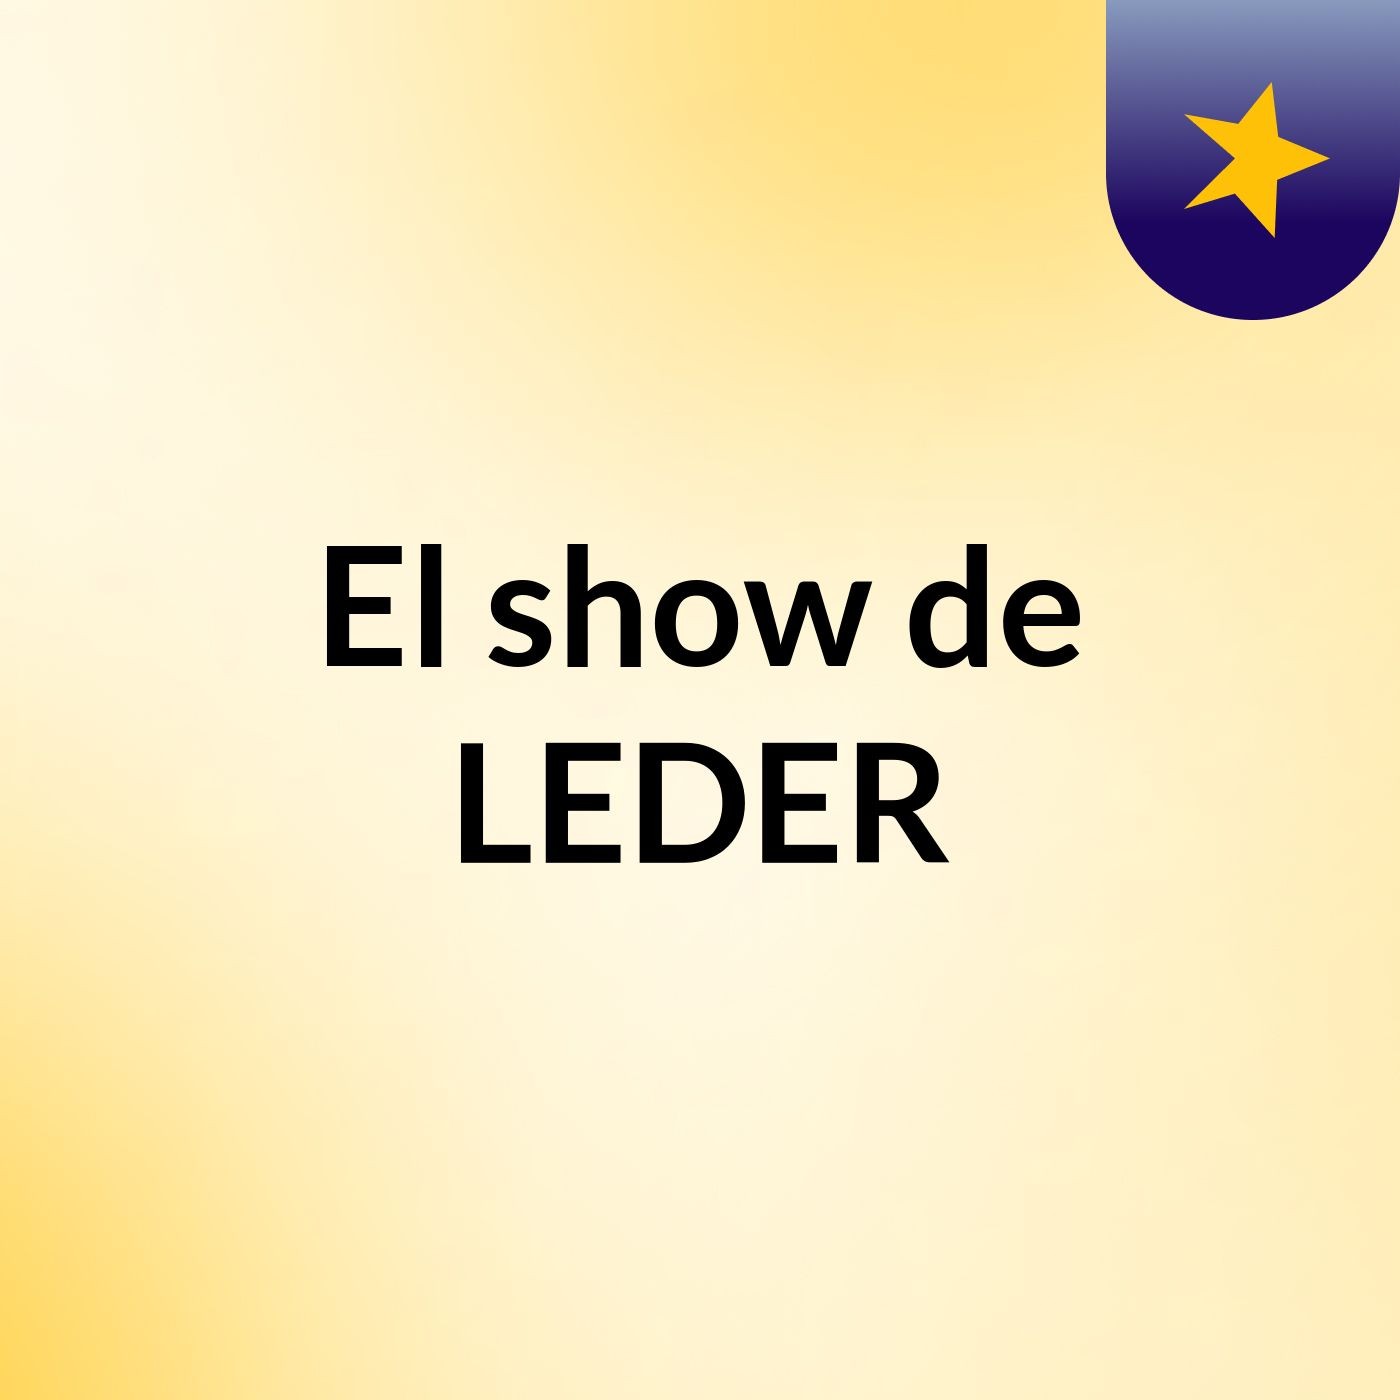 El show de LEDER